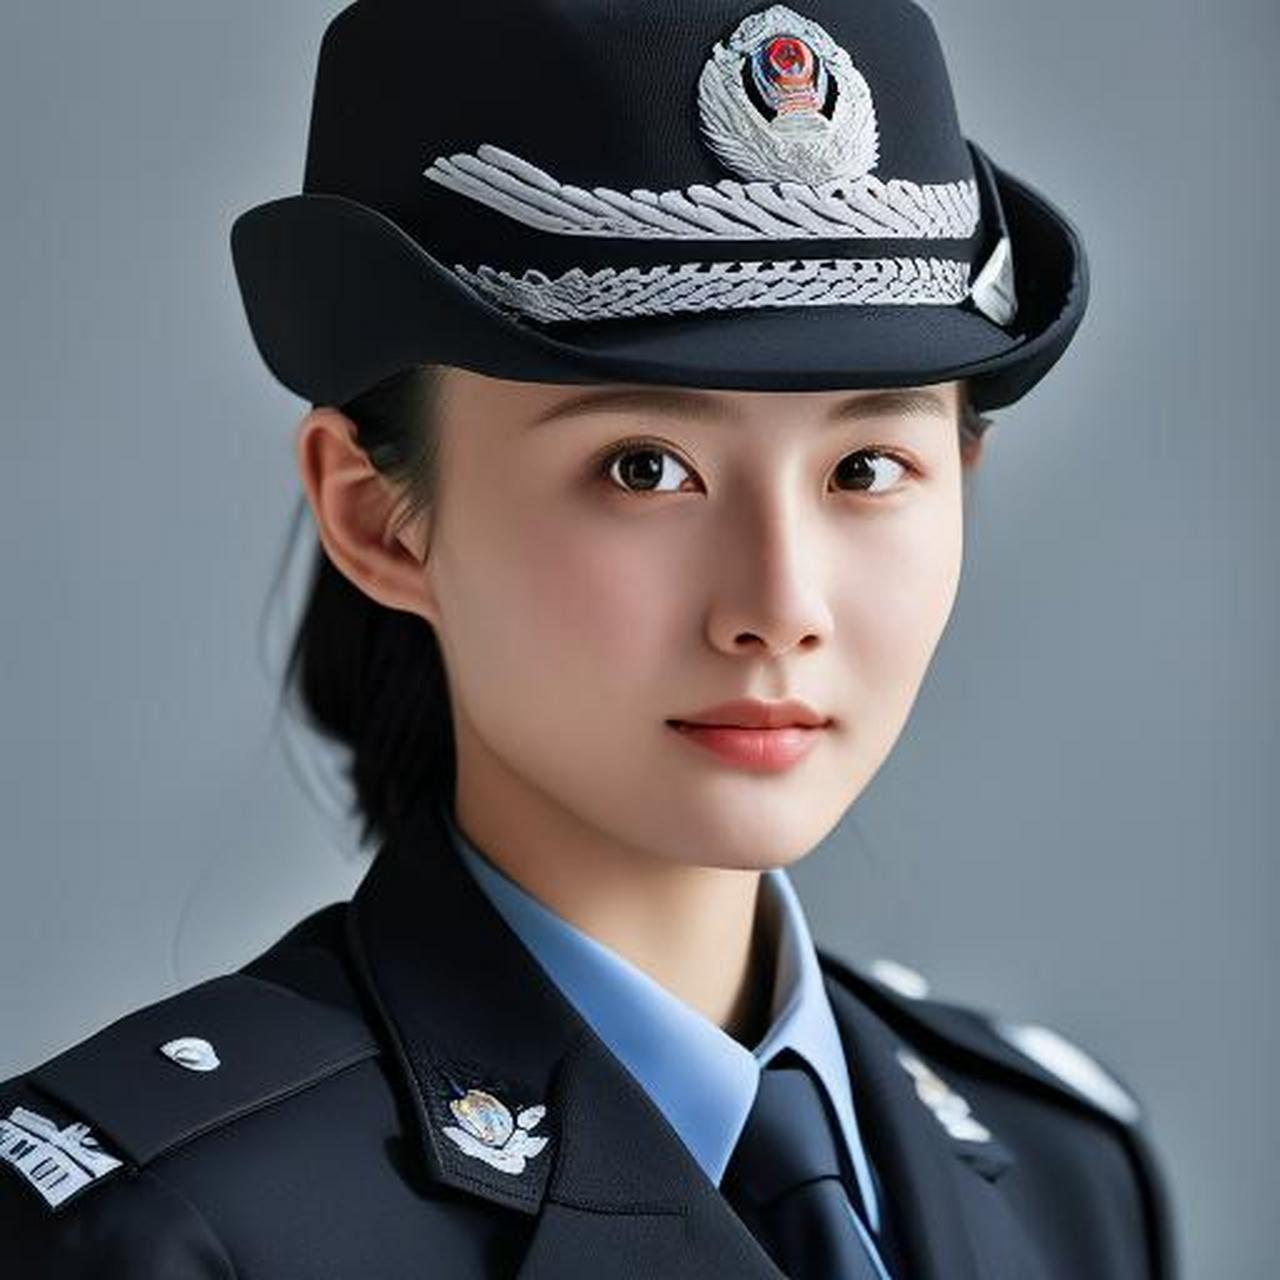 中国有许多漂亮的女警,她们在不同的岗位上默默奉献